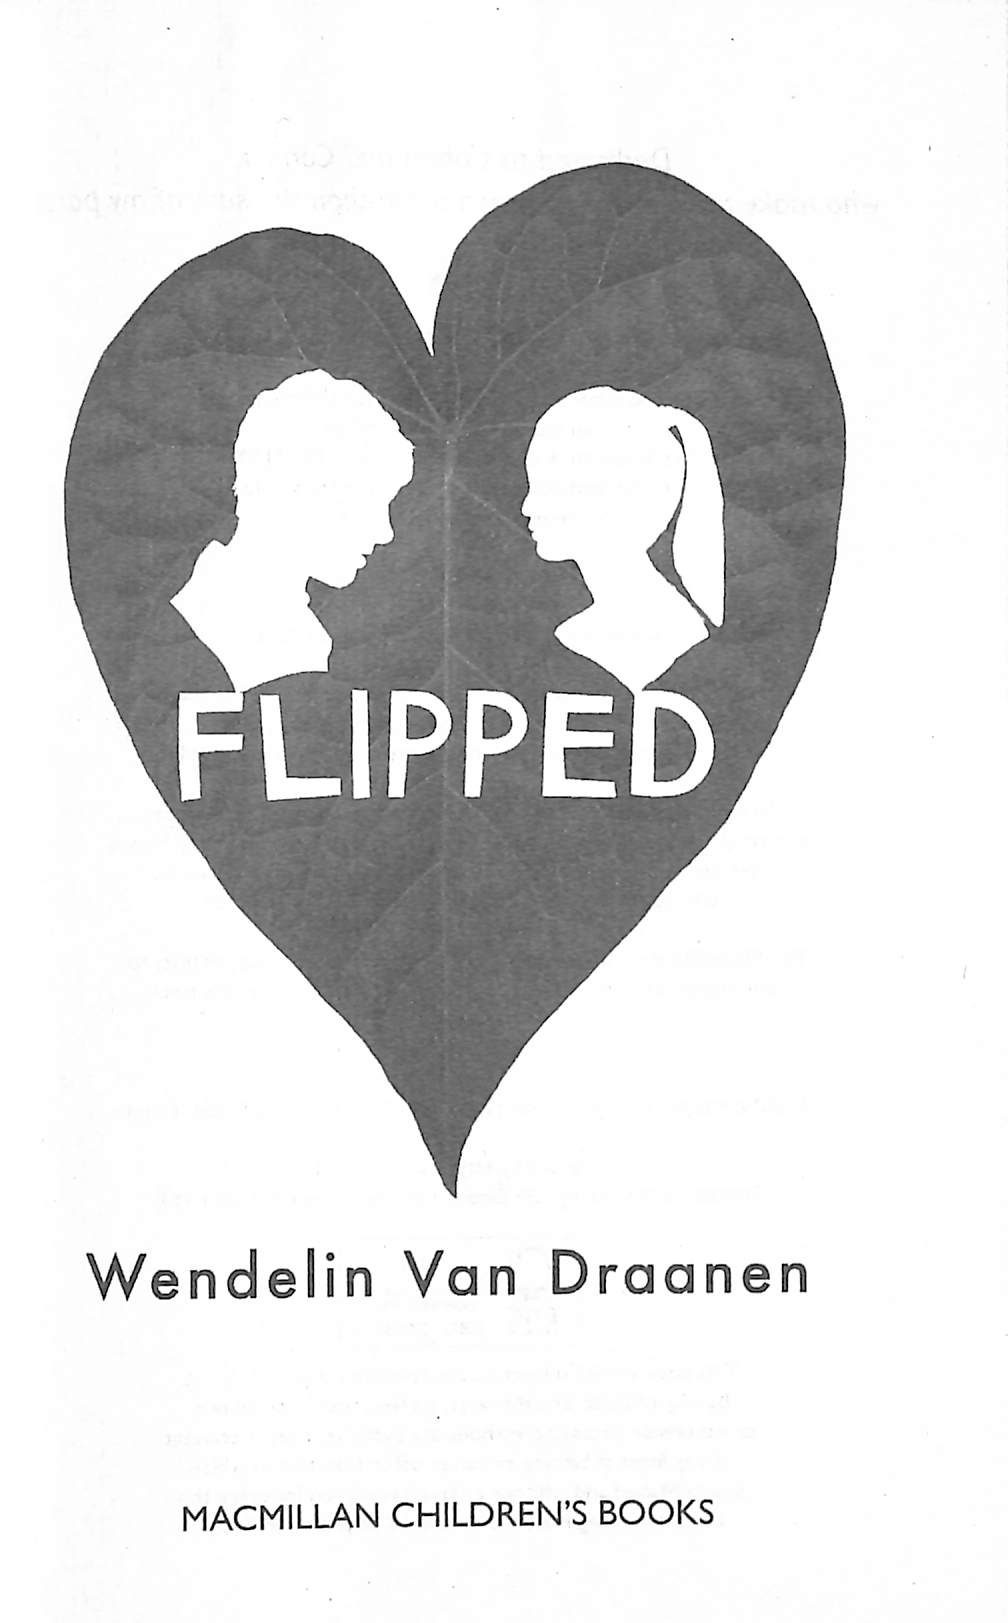 Wendelin Van Draanans Flipped